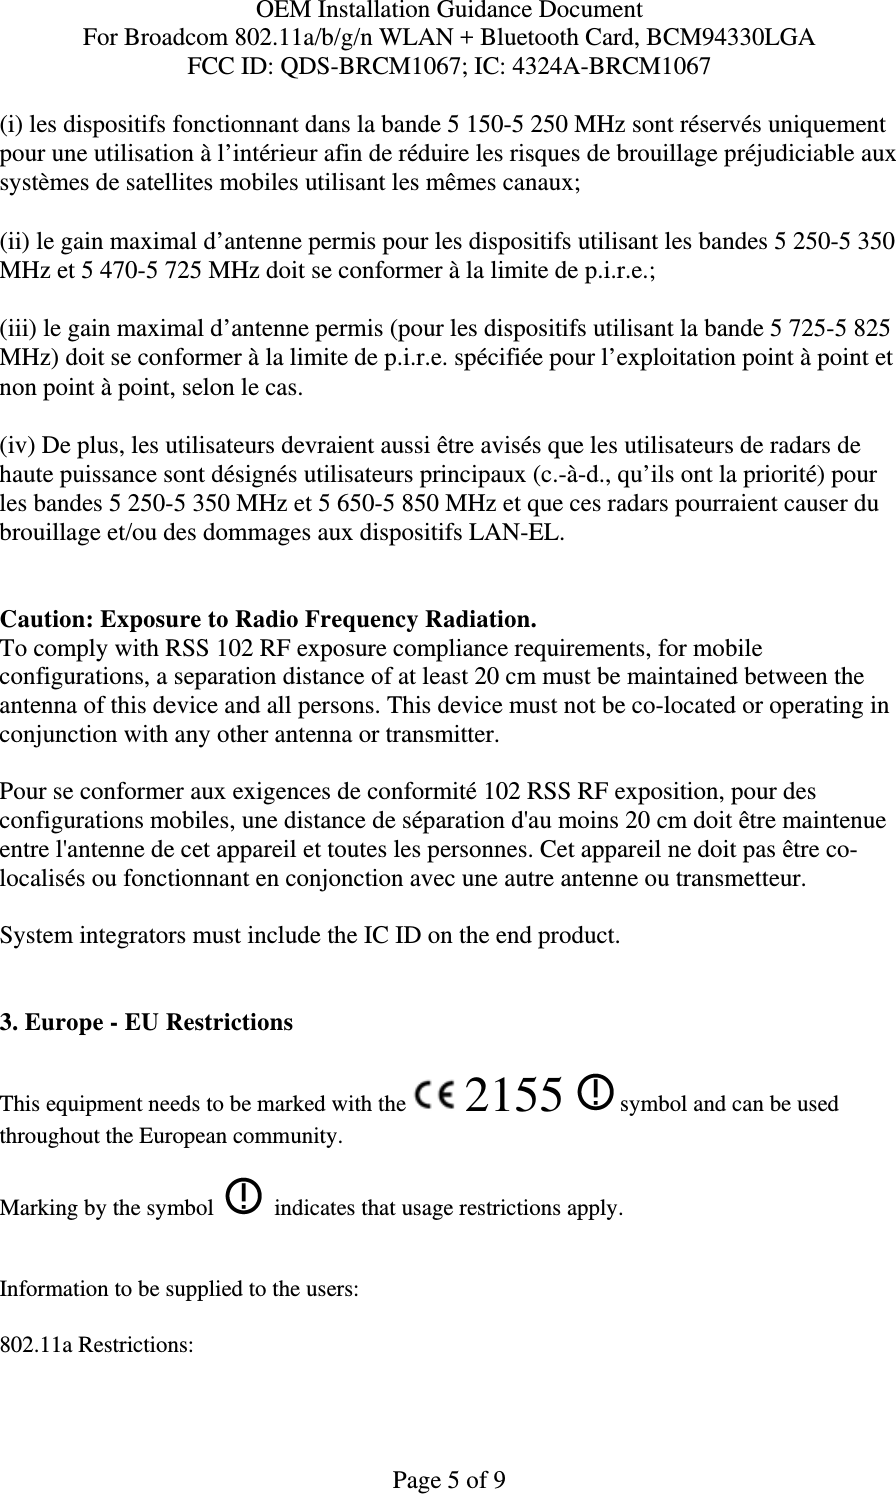 OEM Installation Guidance Document For Broadcom 802.11a/b/g/n WLAN + Bluetooth Card, BCM94330LGA FCC ID: QDS-BRCM1067; IC: 4324A-BRCM1067  Page 5 of 9 (i) les dispositifs fonctionnant dans la bande 5 150-5 250 MHz sont réservés uniquement pour une utilisation à l’intérieur afin de réduire les risques de brouillage préjudiciable aux systèmes de satellites mobiles utilisant les mêmes canaux; (ii) le gain maximal d’antenne permis pour les dispositifs utilisant les bandes 5 250-5 350 MHz et 5 470-5 725 MHz doit se conformer à la limite de p.i.r.e.; (iii) le gain maximal d’antenne permis (pour les dispositifs utilisant la bande 5 725-5 825 MHz) doit se conformer à la limite de p.i.r.e. spécifiée pour l’exploitation point à point et non point à point, selon le cas. (iv) De plus, les utilisateurs devraient aussi être avisés que les utilisateurs de radars de haute puissance sont désignés utilisateurs principaux (c.-à-d., qu’ils ont la priorité) pour les bandes 5 250-5 350 MHz et 5 650-5 850 MHz et que ces radars pourraient causer du brouillage et/ou des dommages aux dispositifs LAN-EL.  Caution: Exposure to Radio Frequency Radiation. To comply with RSS 102 RF exposure compliance requirements, for mobile configurations, a separation distance of at least 20 cm must be maintained between the antenna of this device and all persons. This device must not be co-located or operating in conjunction with any other antenna or transmitter.  Pour se conformer aux exigences de conformité 102 RSS RF exposition, pour des configurations mobiles, une distance de séparation d&apos;au moins 20 cm doit être maintenue entre l&apos;antenne de cet appareil et toutes les personnes. Cet appareil ne doit pas être co-localisés ou fonctionnant en conjonction avec une autre antenne ou transmetteur.  System integrators must include the IC ID on the end product.    3. Europe - EU Restrictions This equipment needs to be marked with the   2155   symbol and can be used throughout the European community.  Marking by the symbol     indicates that usage restrictions apply.  Information to be supplied to the users: 802.11a Restrictions: 